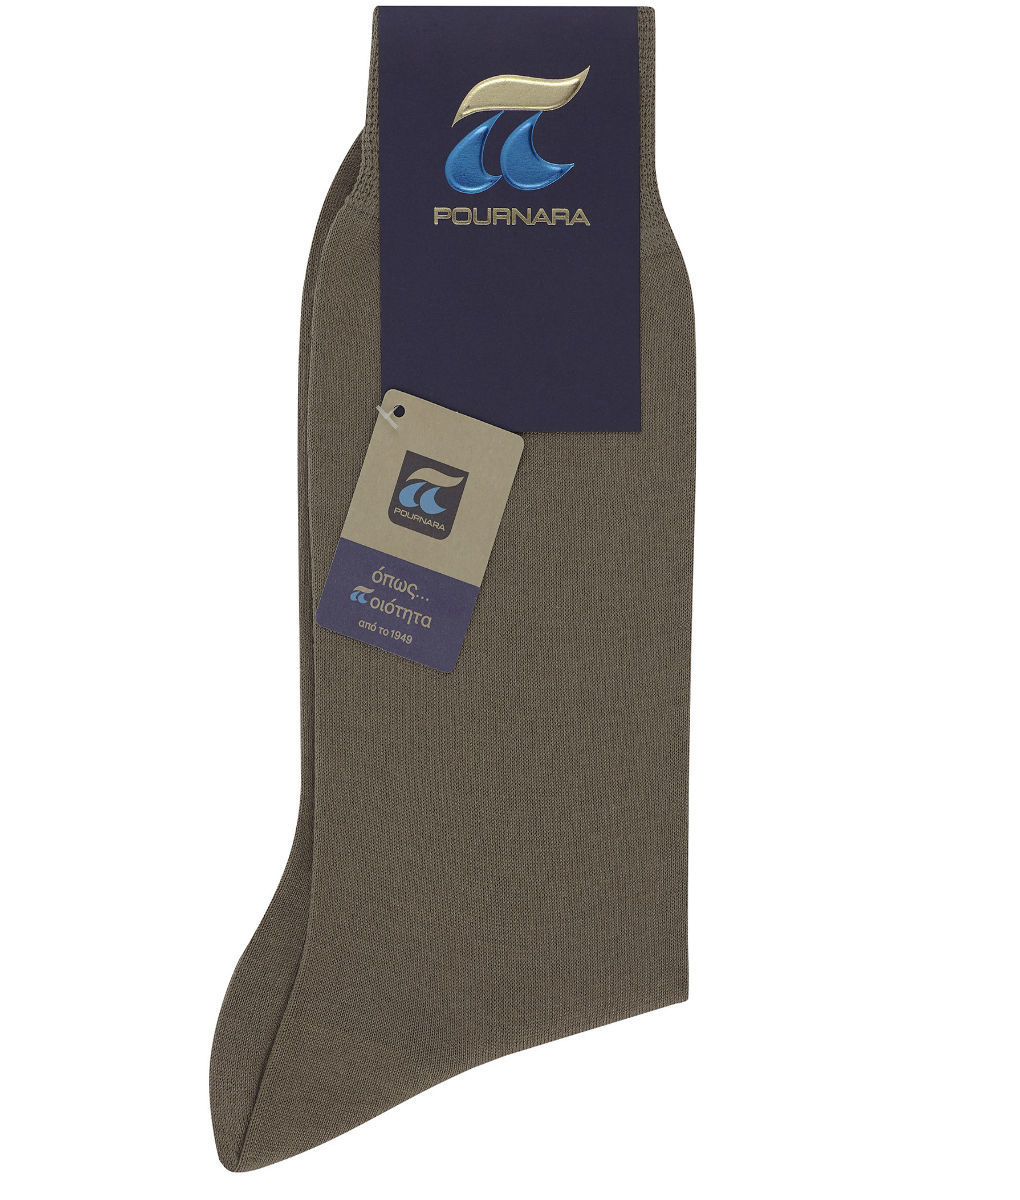 100% Μερσεριζέ βαμβακερή ανδρική κάλτσα Πουρνάρας σε λαδί χρώμα P110-92 P110C Λαδί